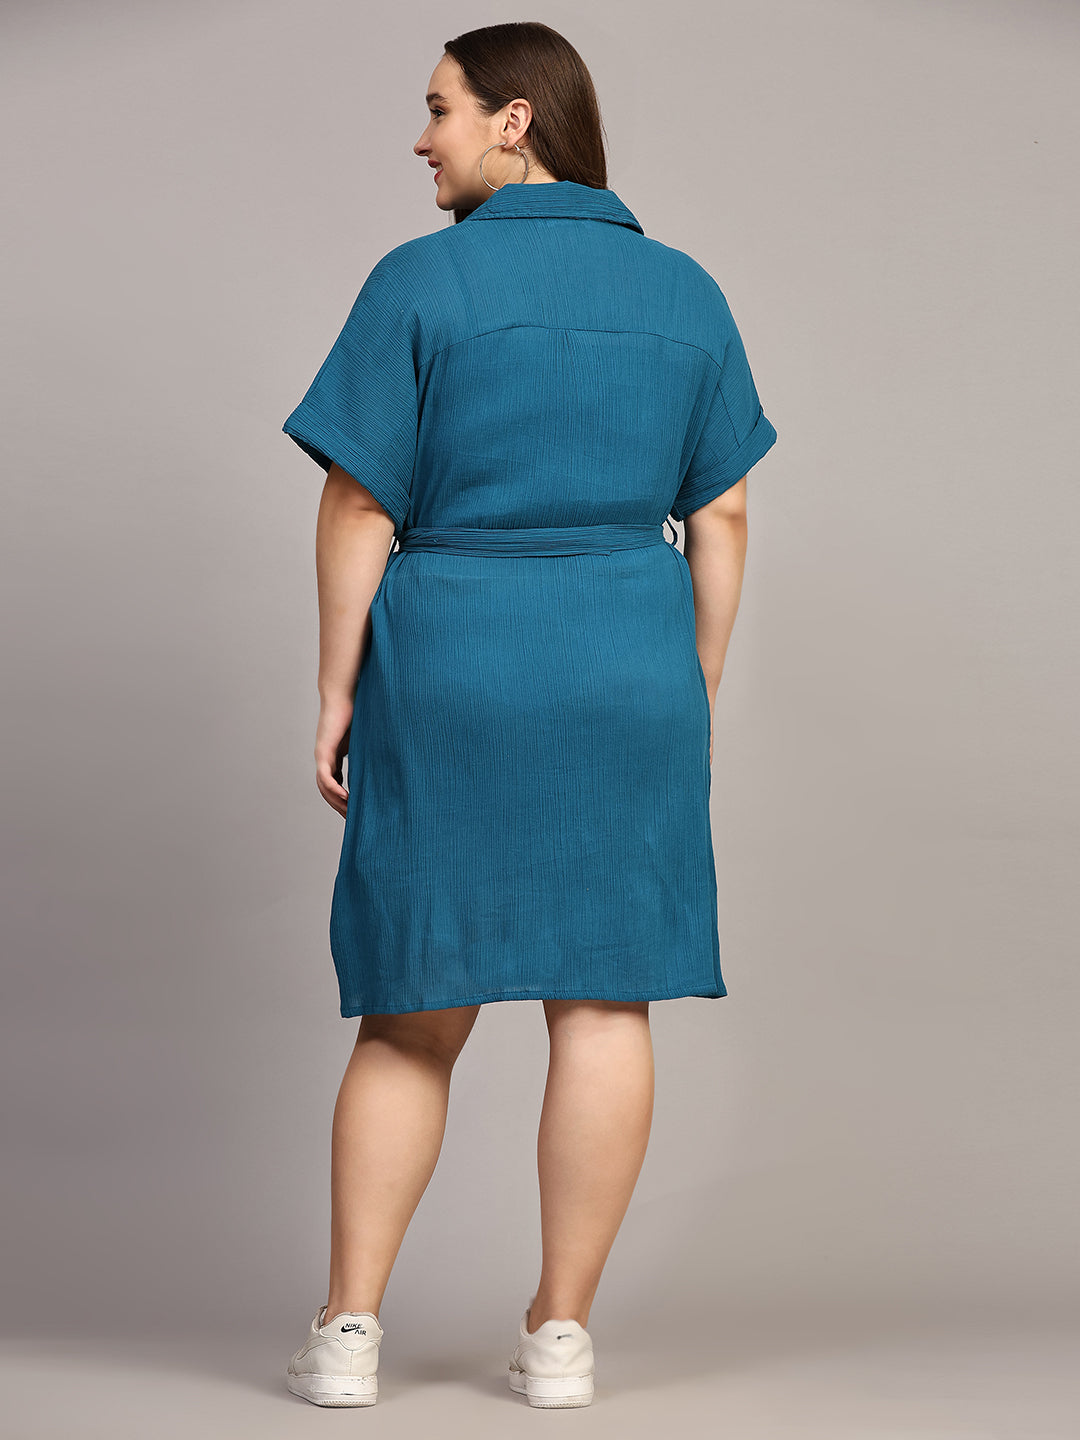 Pomegal Teal Blue Wrinkle Shirt Dress